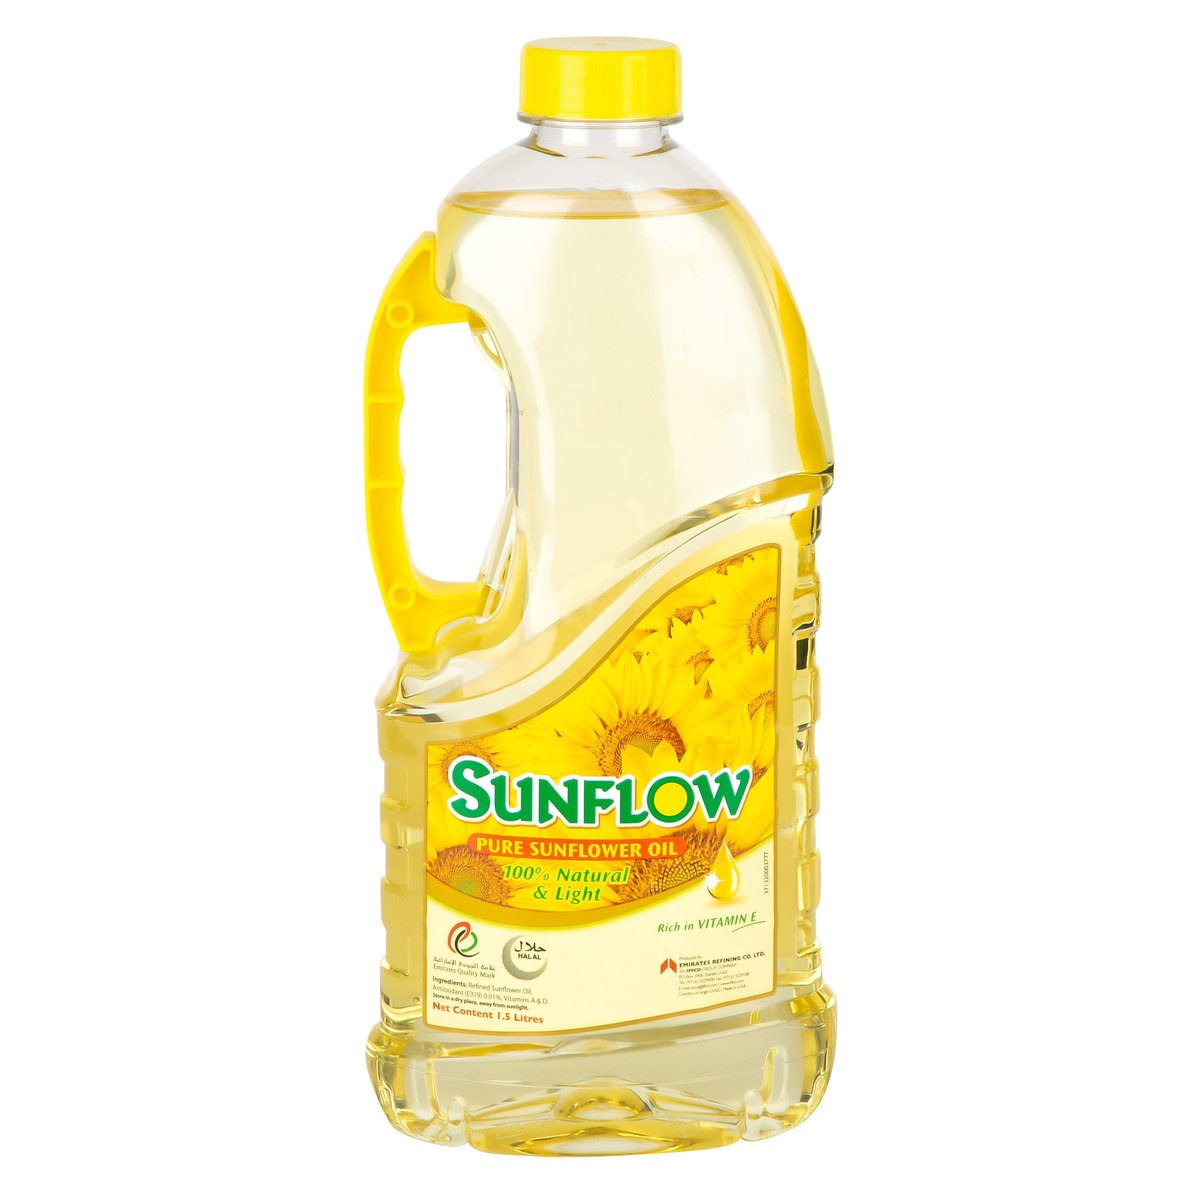 اشتري قم بشراء صن فلو زيت دوار الشمس 1.5 لتر Online at Best Price من الموقع - من لولو هايبر ماركت Sunflower Oil في السعودية